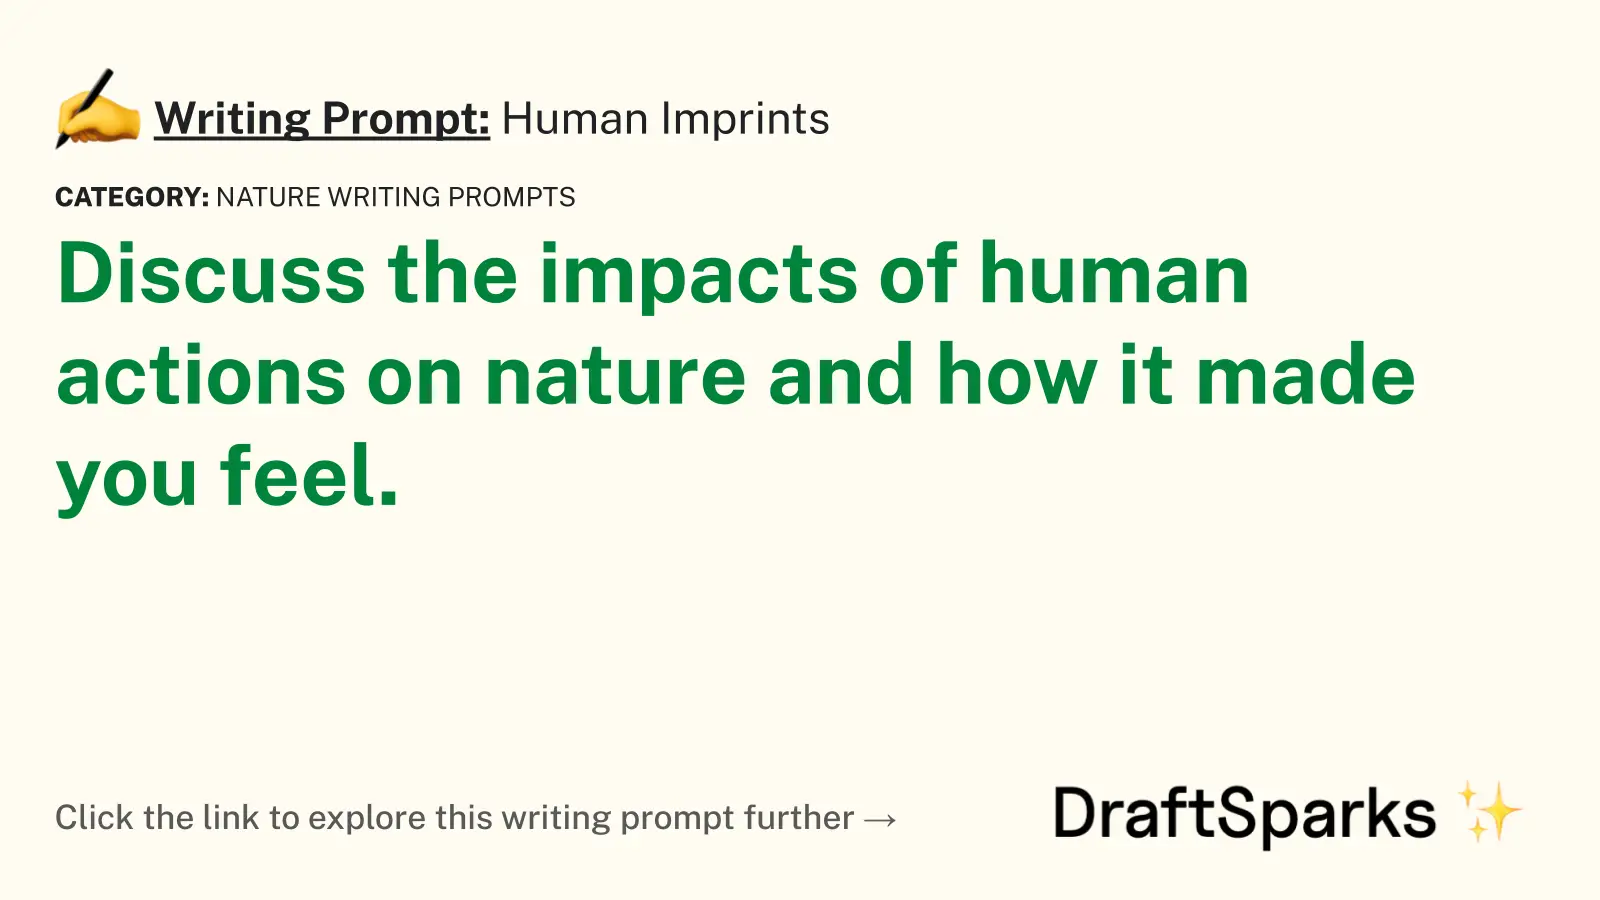 Human Imprints